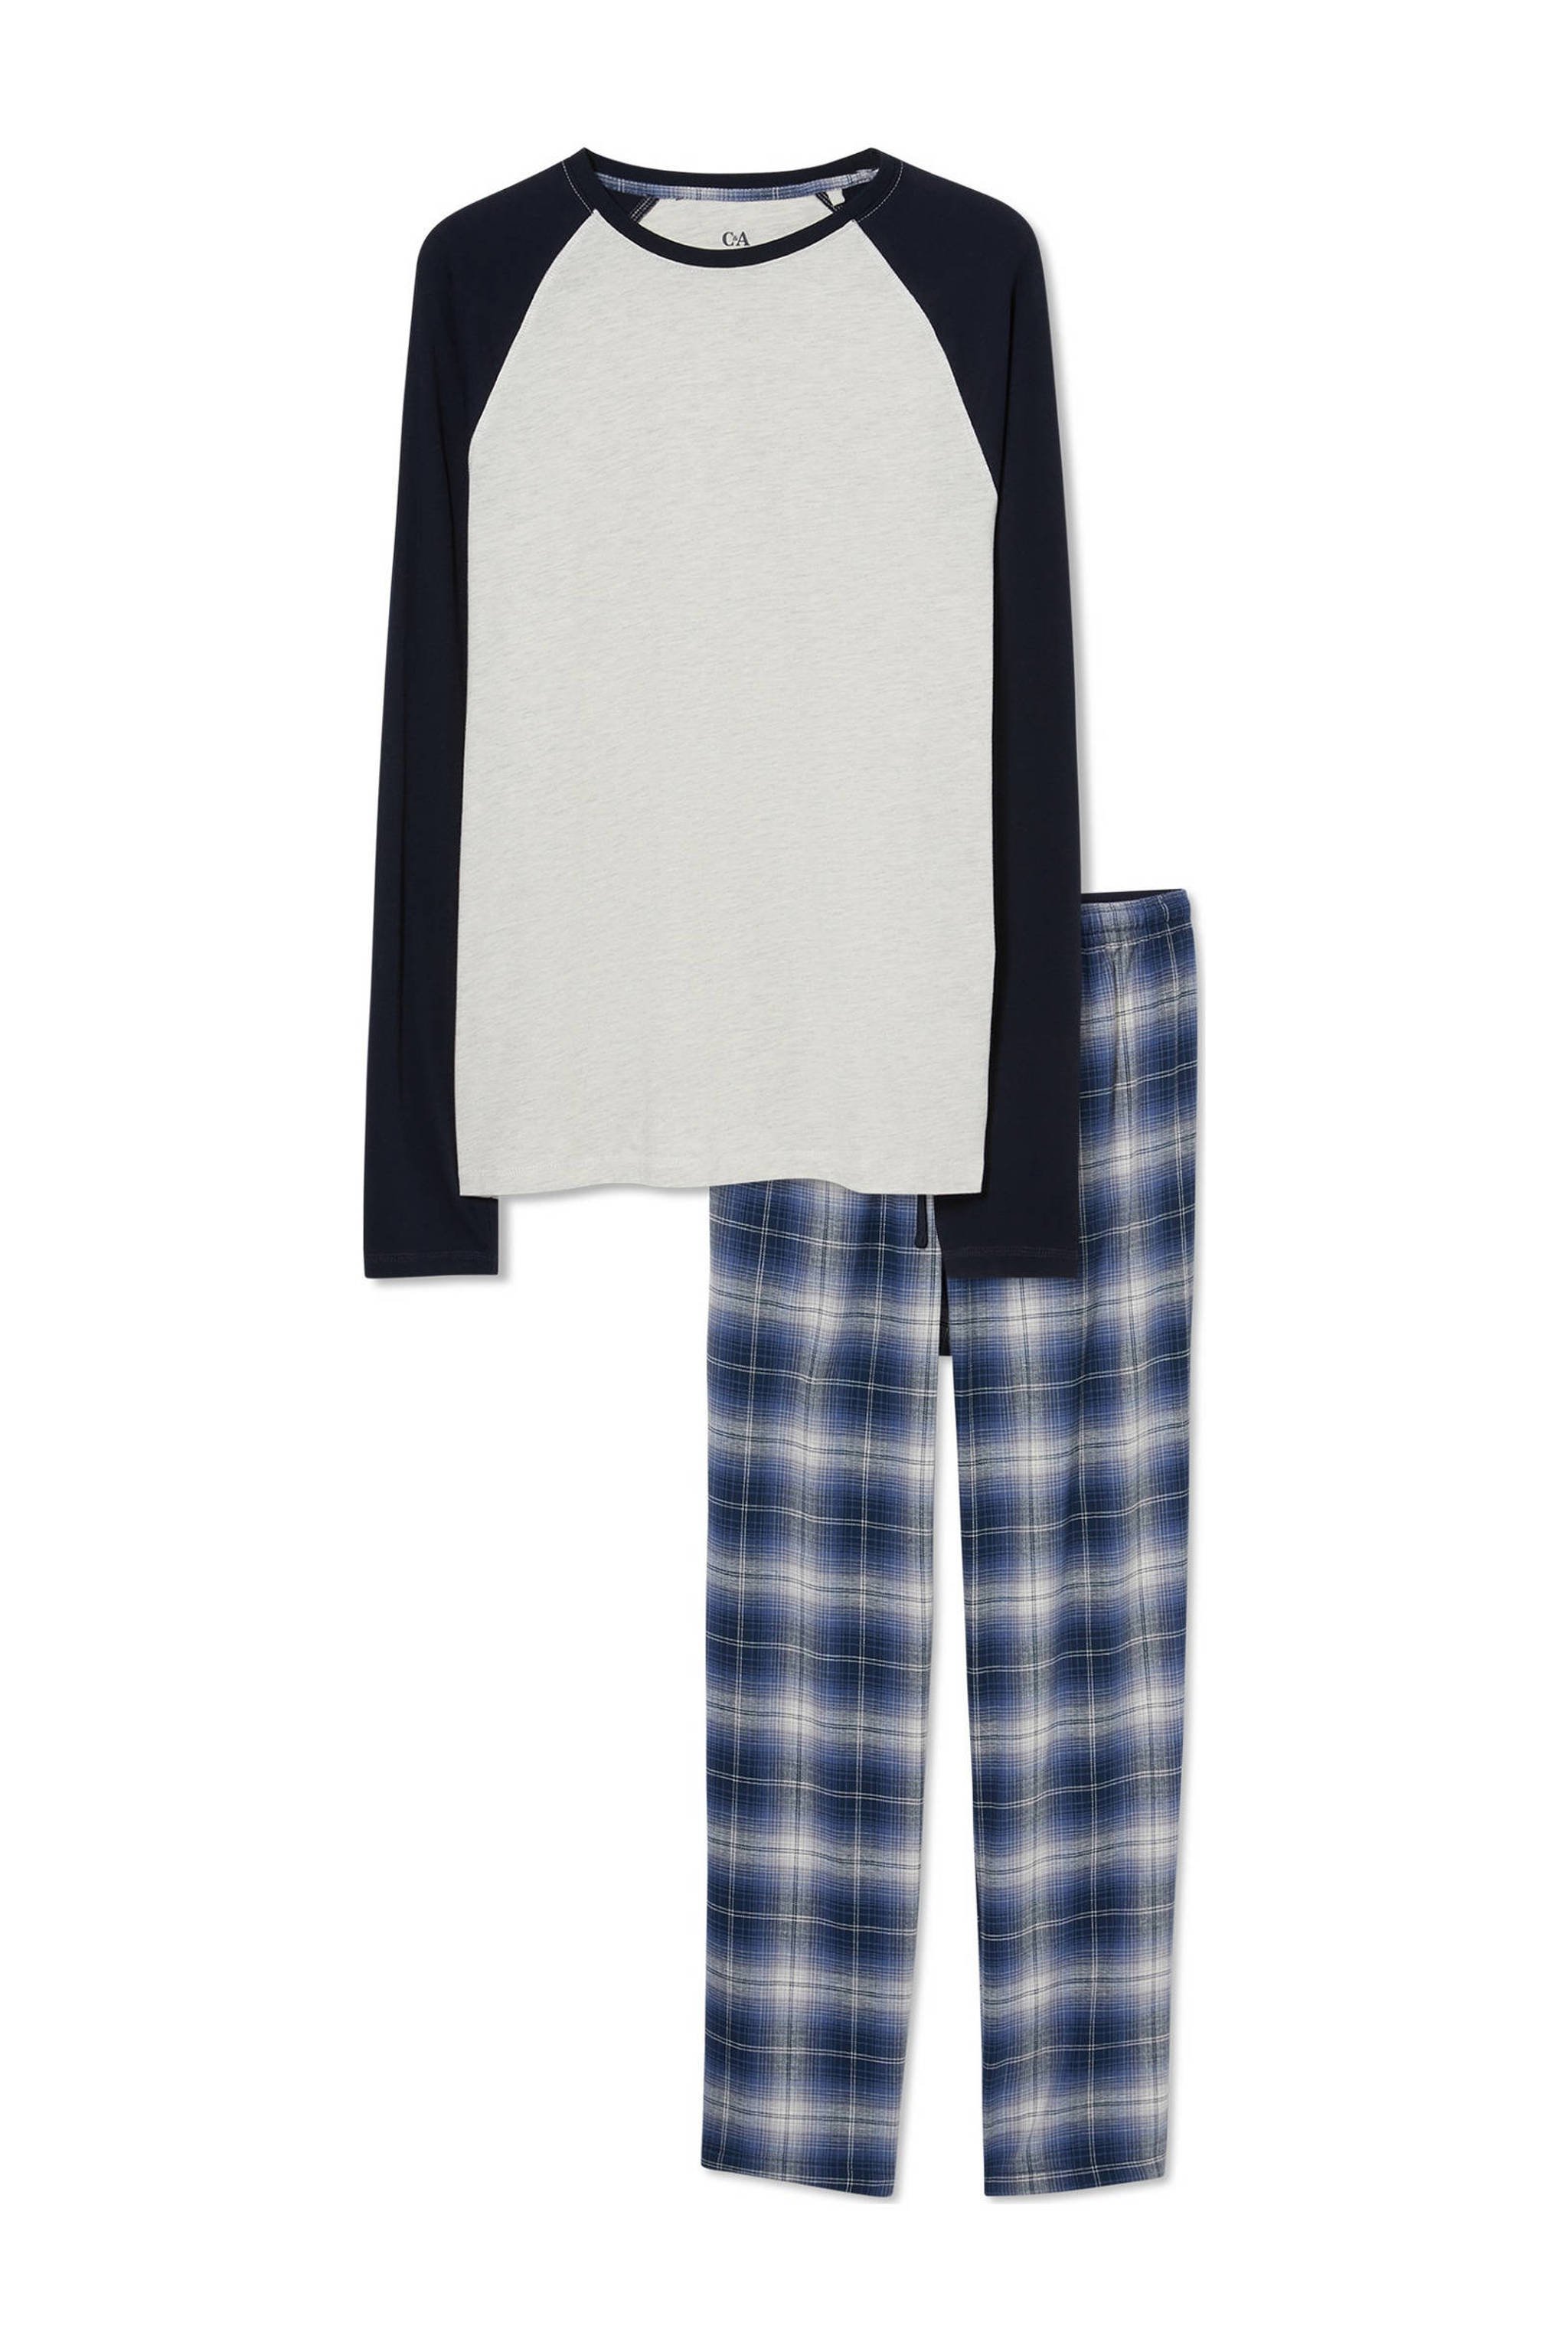 C&A pyjama ruiten grijs/donkerblauw | wehkamp